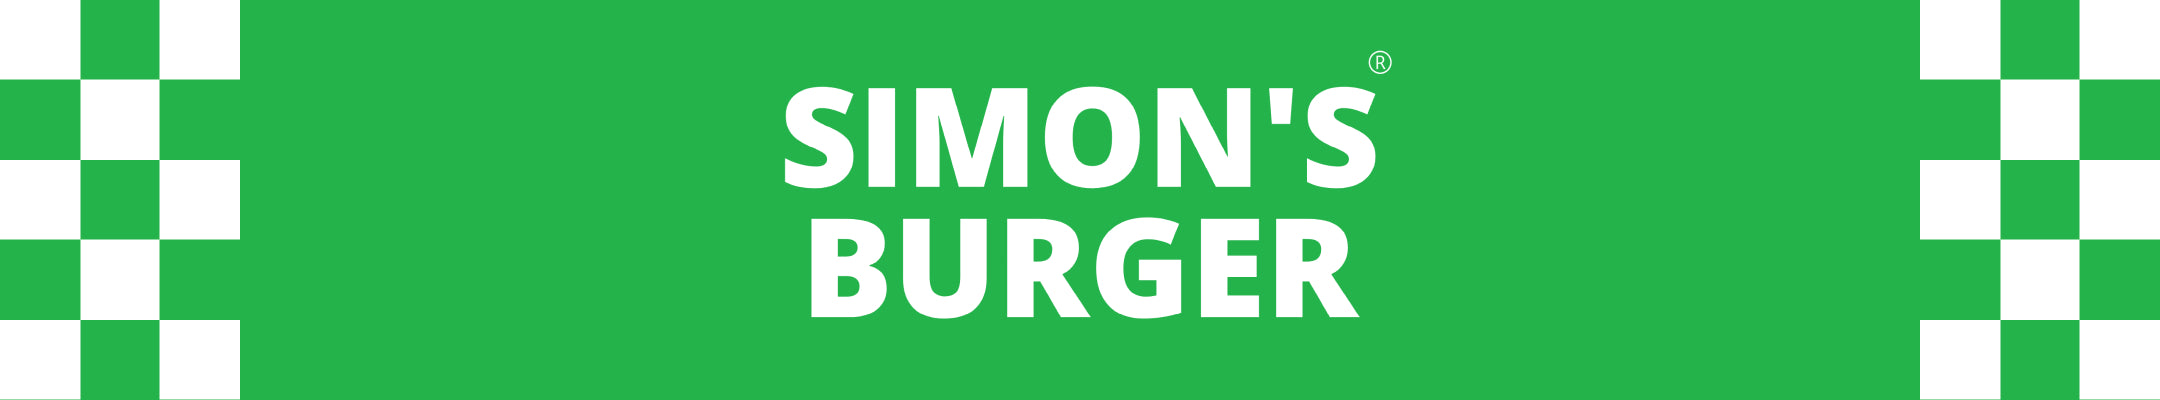 Simon's Burger